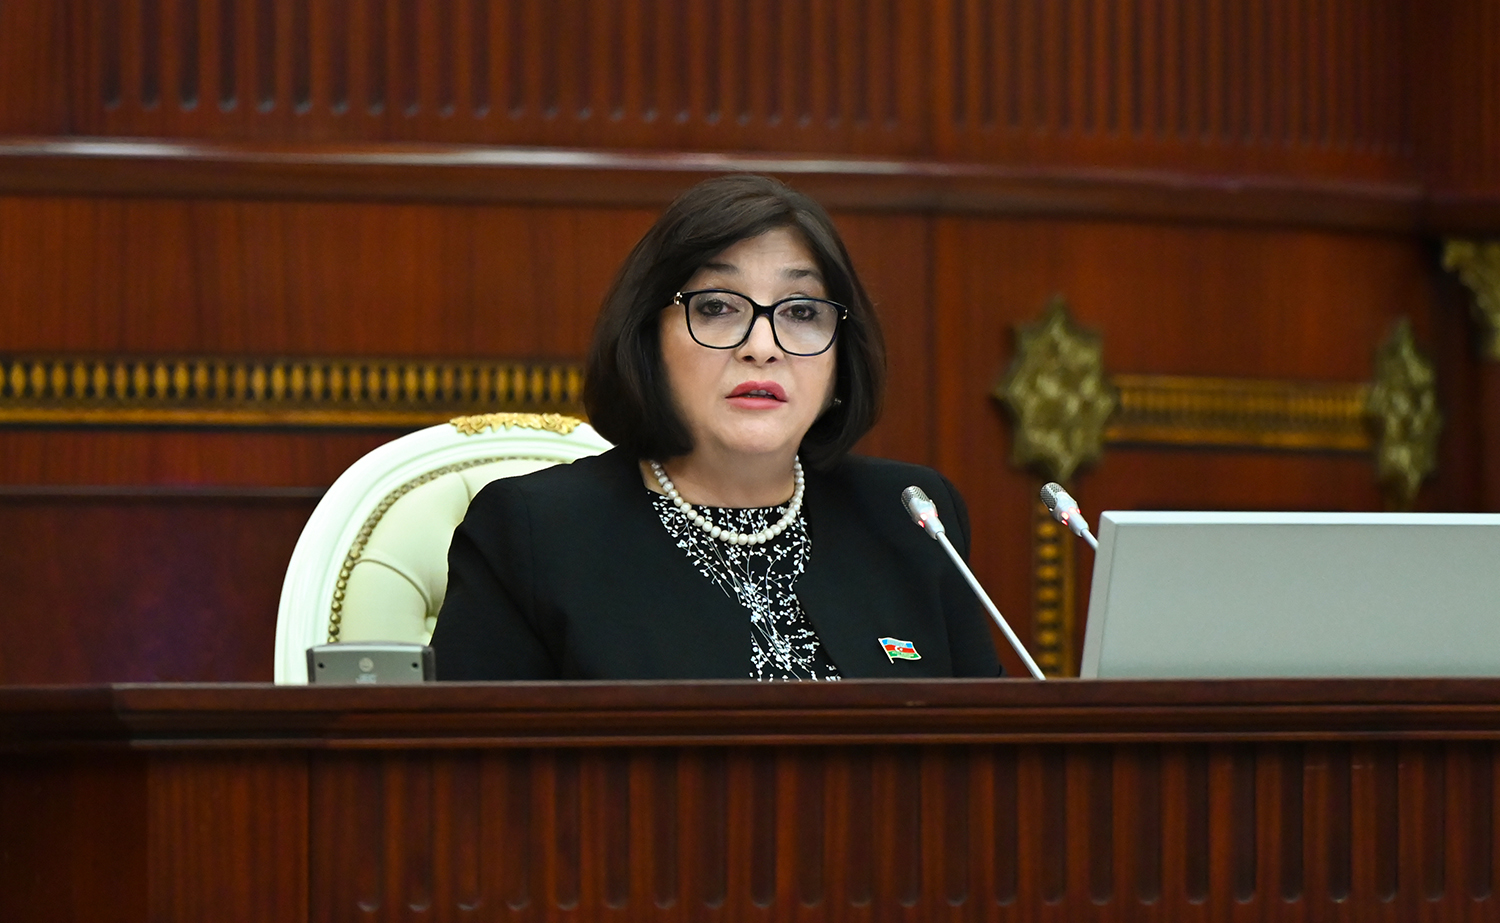 Milli Məclisin payız sessiyasında ilk plenar iclası keçirilib